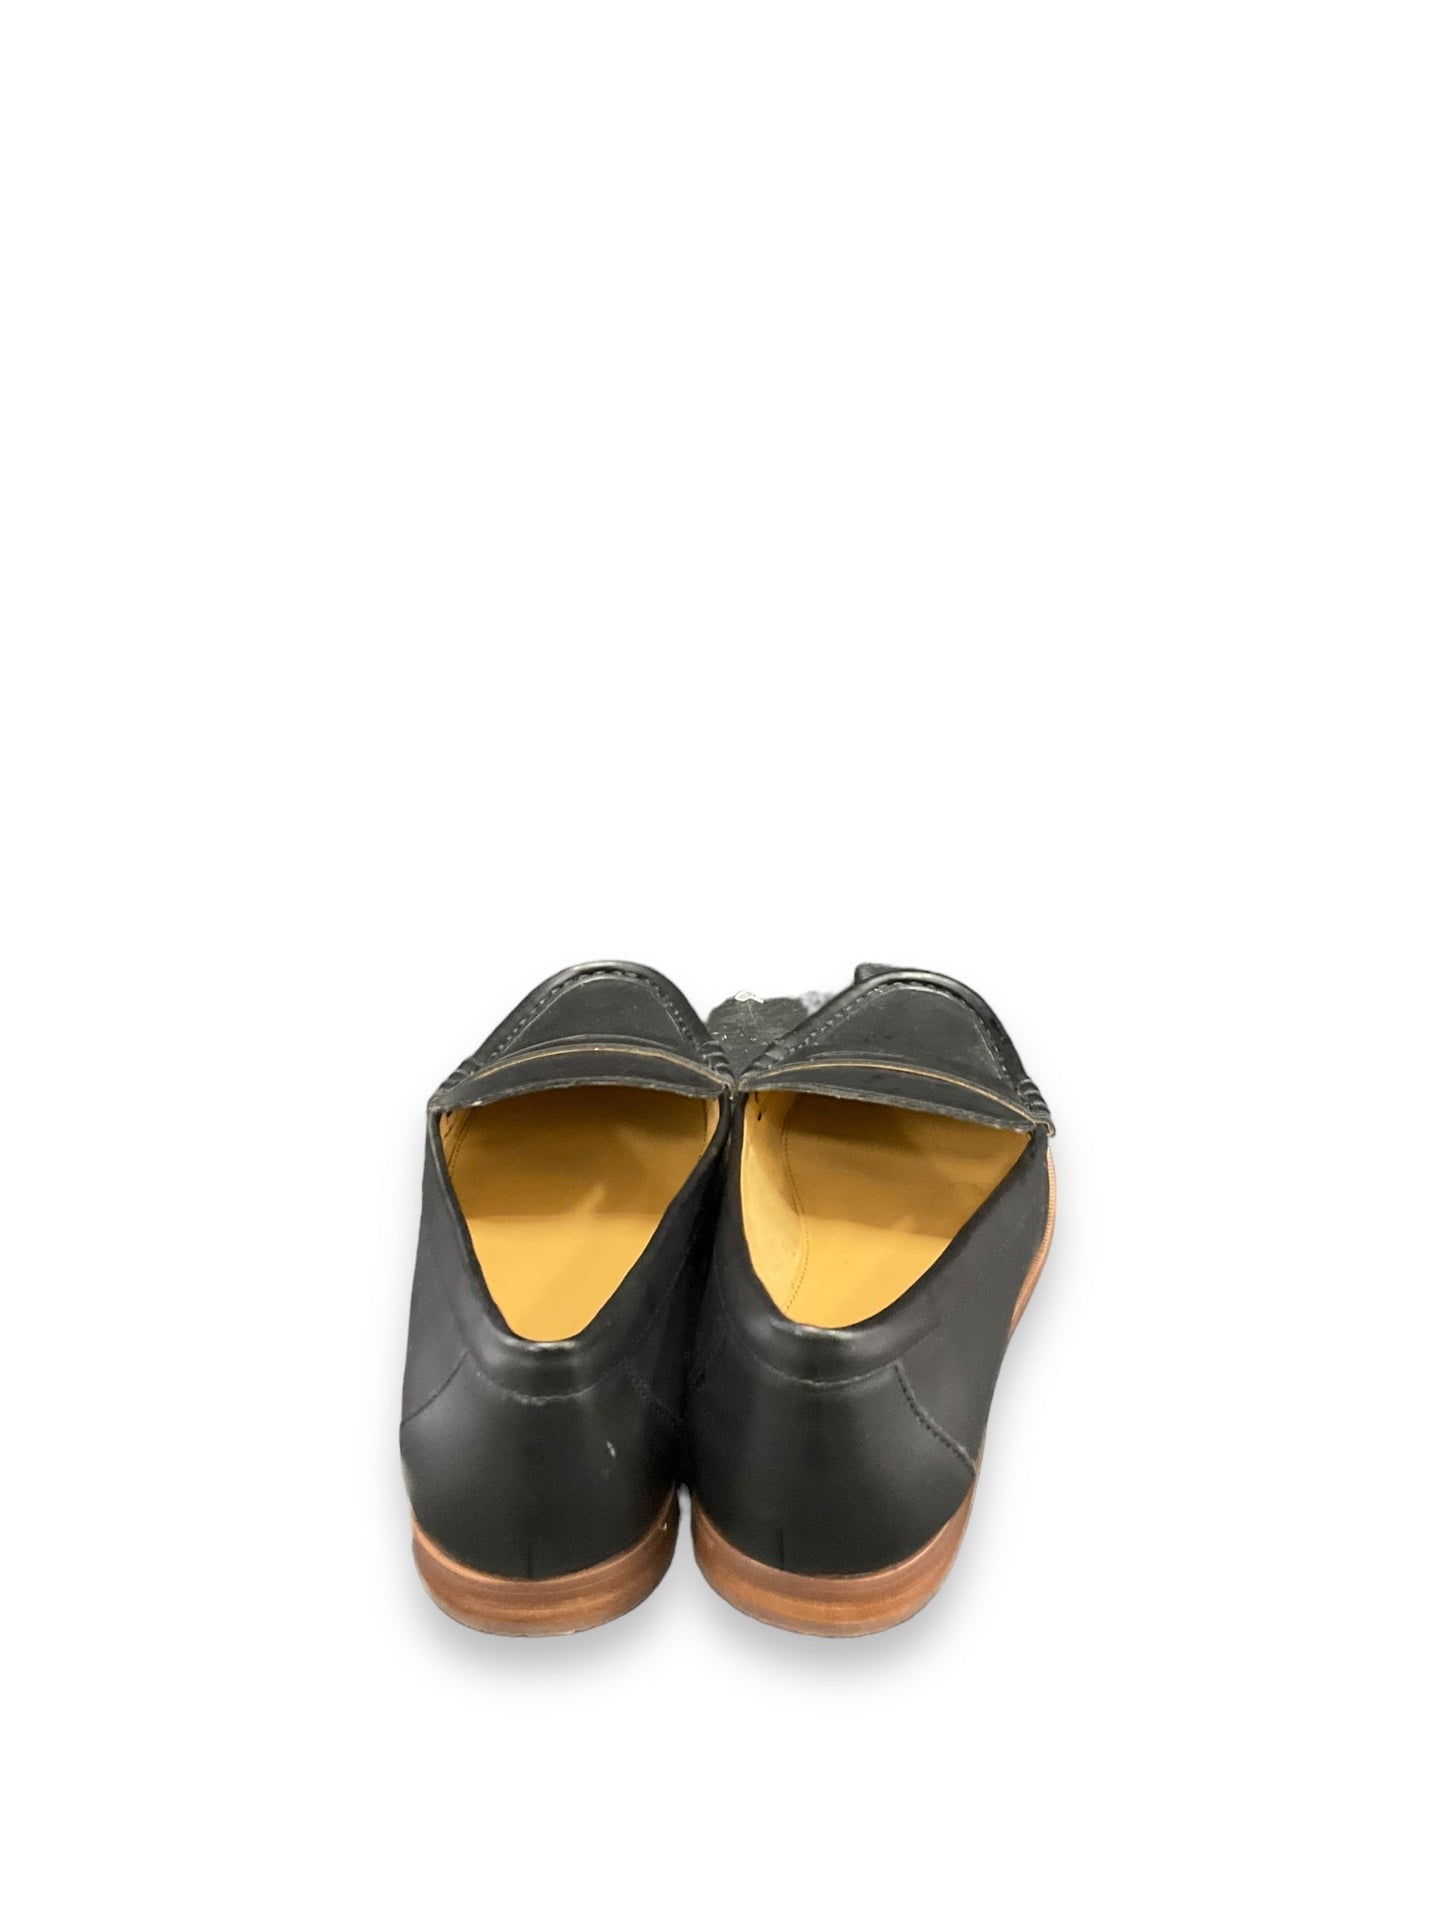 Black Shoes Flats J. Crew, Size 9